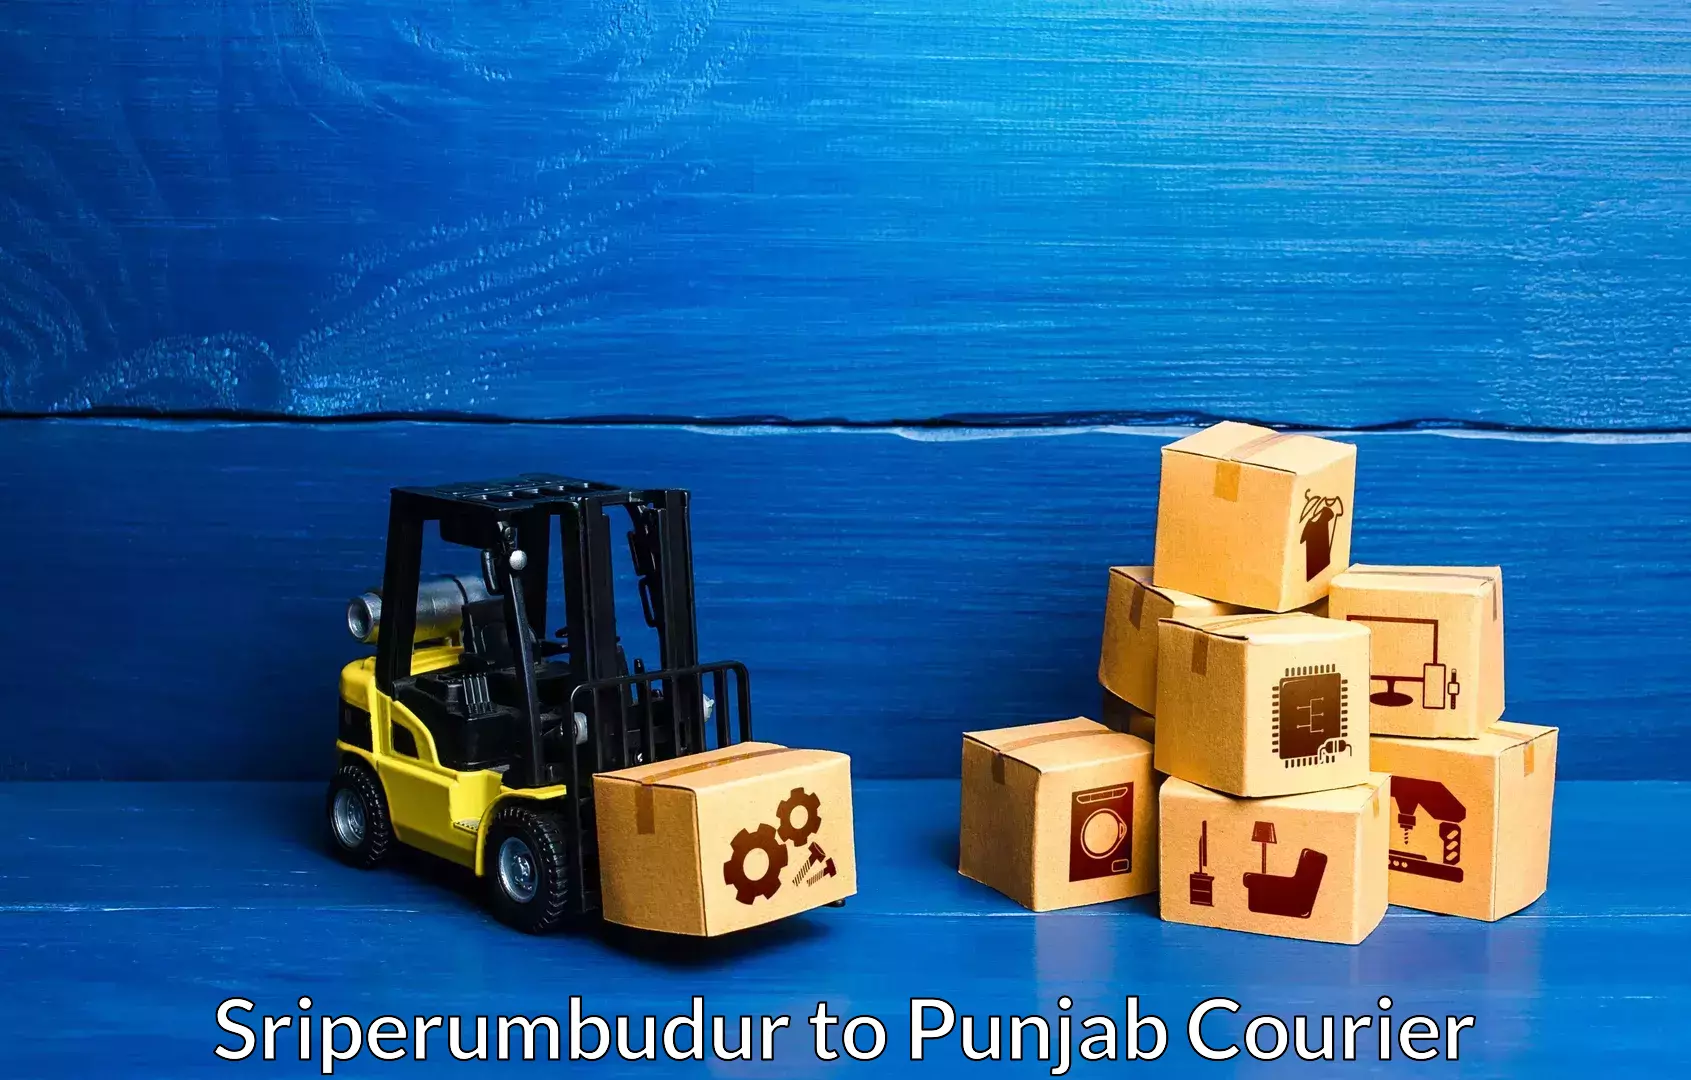 Furniture transport specialists Sriperumbudur to Punjab